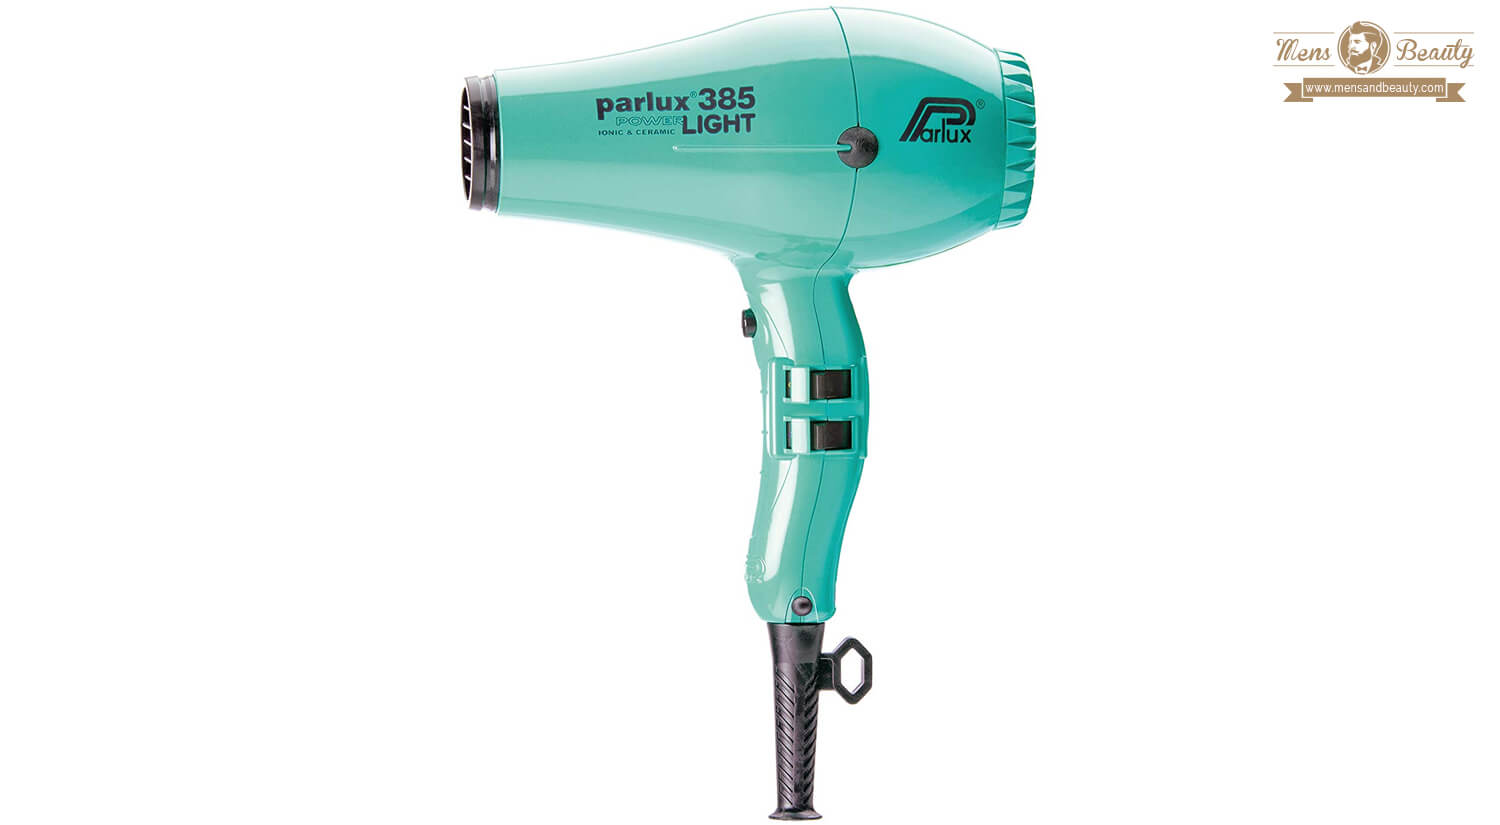 mejores productos de cabello para hombre accesorios para cuidado cabello secador parlux hair dryer 385 power light